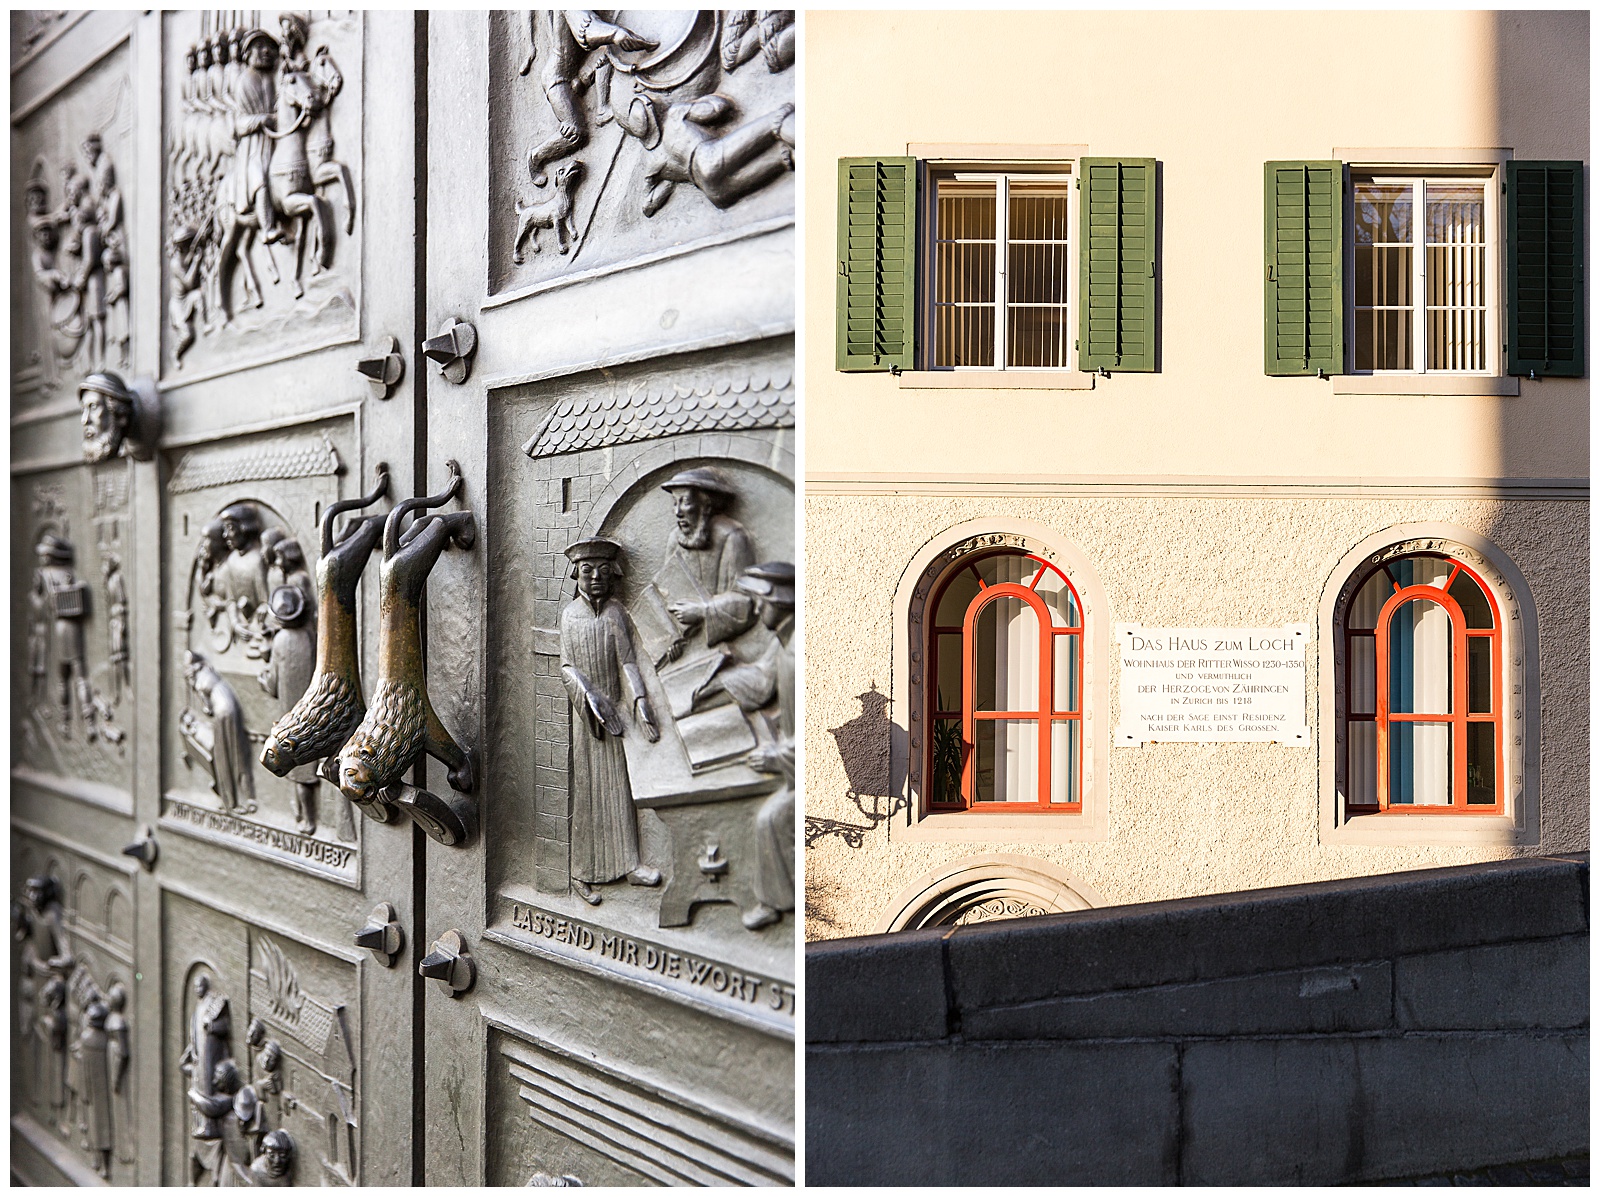 Historic and Architectural details in Zurich Switzerland